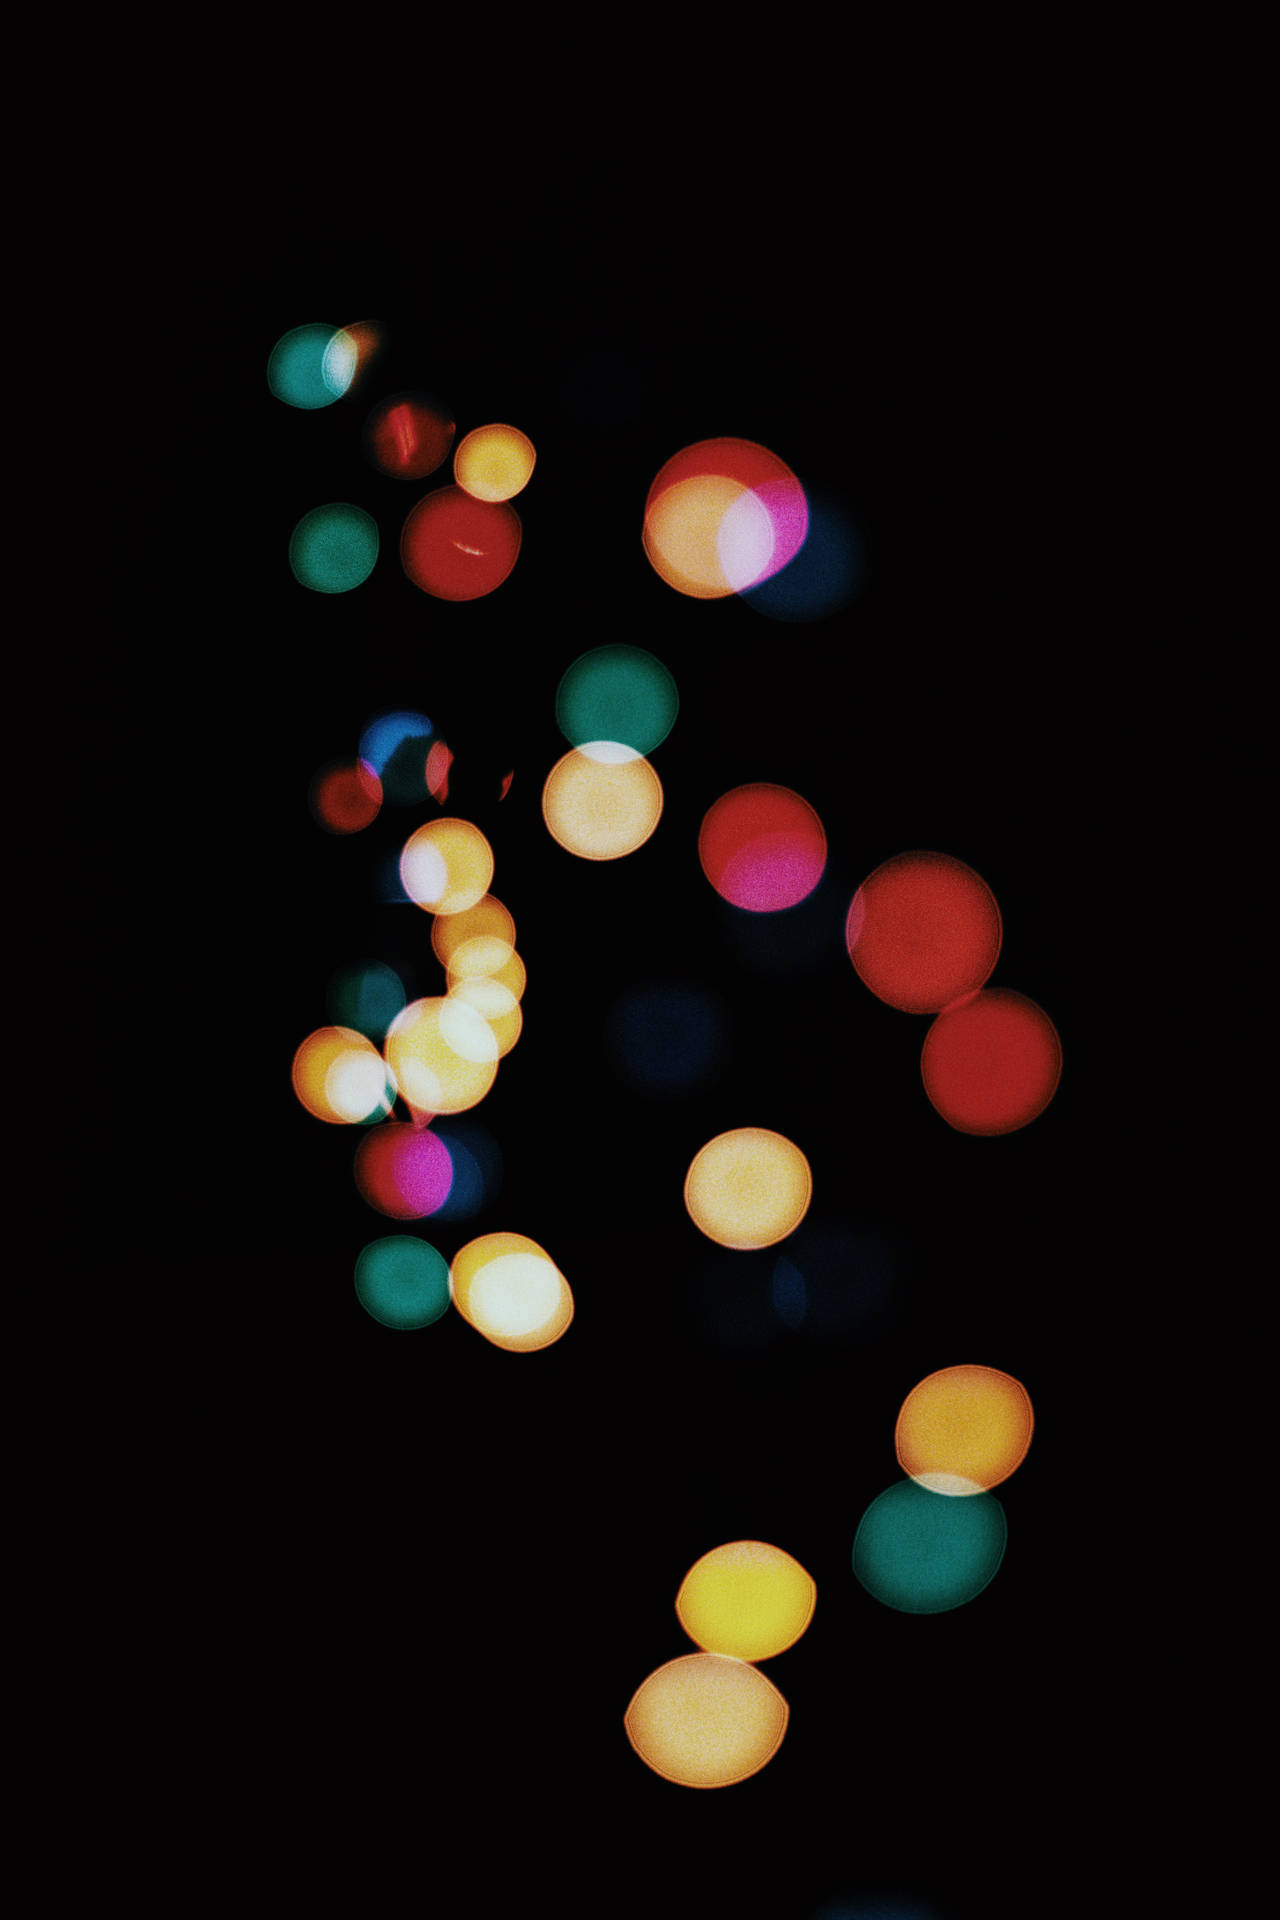 Orbsde Luz Coloridas Para La Pantalla De Inicio Del Iphone. Fondo de pantalla